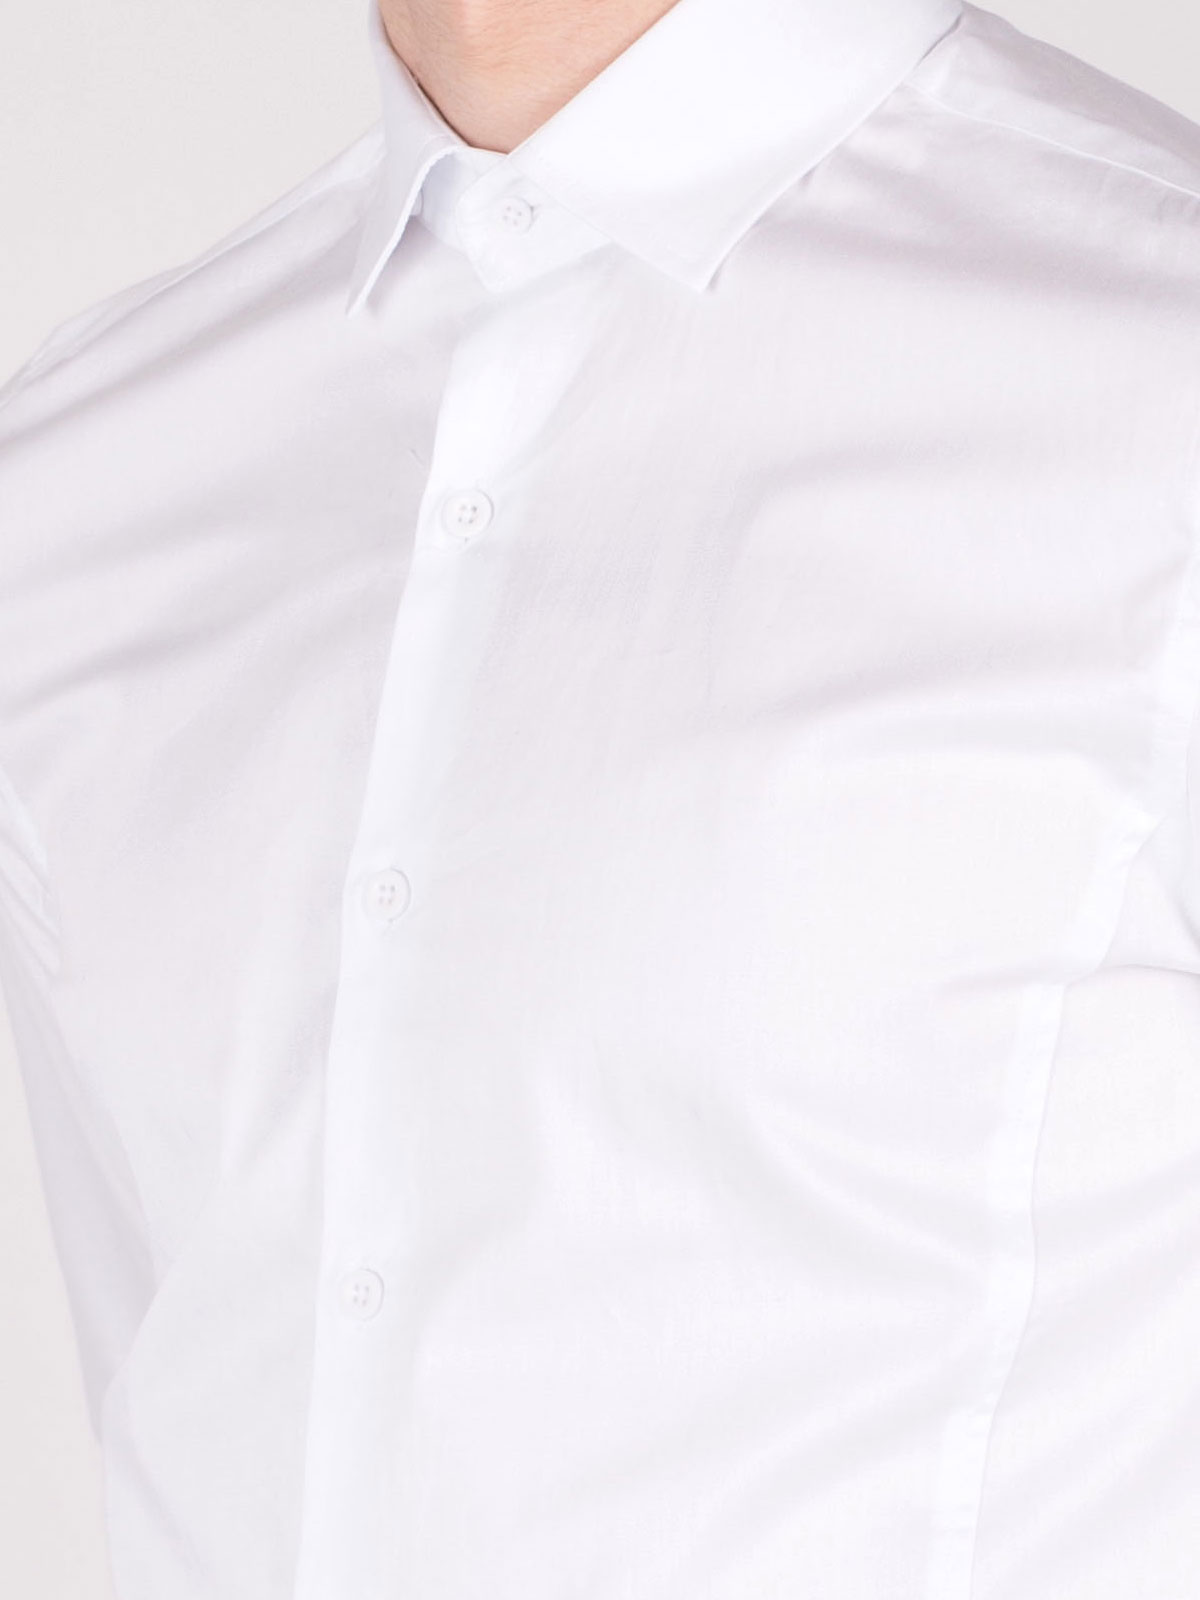  white classic shirt  - 21358 € 34.90 img3